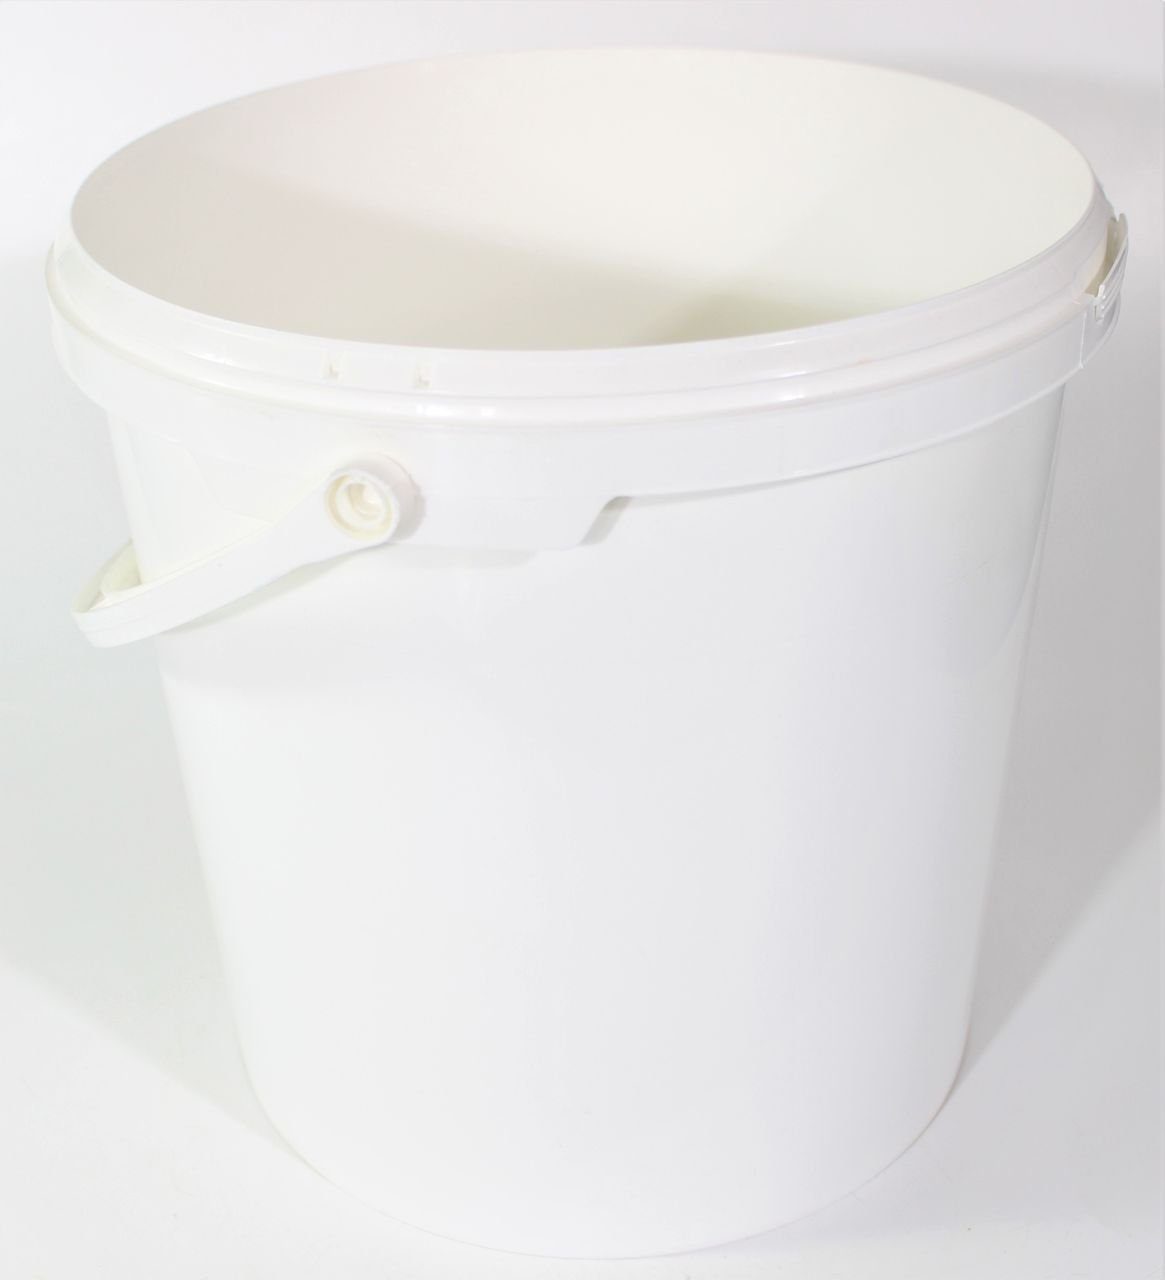 myMAW Auffangbehälter 5x Eimer ohne Deckel 10 Liter Leereimer Behälter Kunststoffeimer…